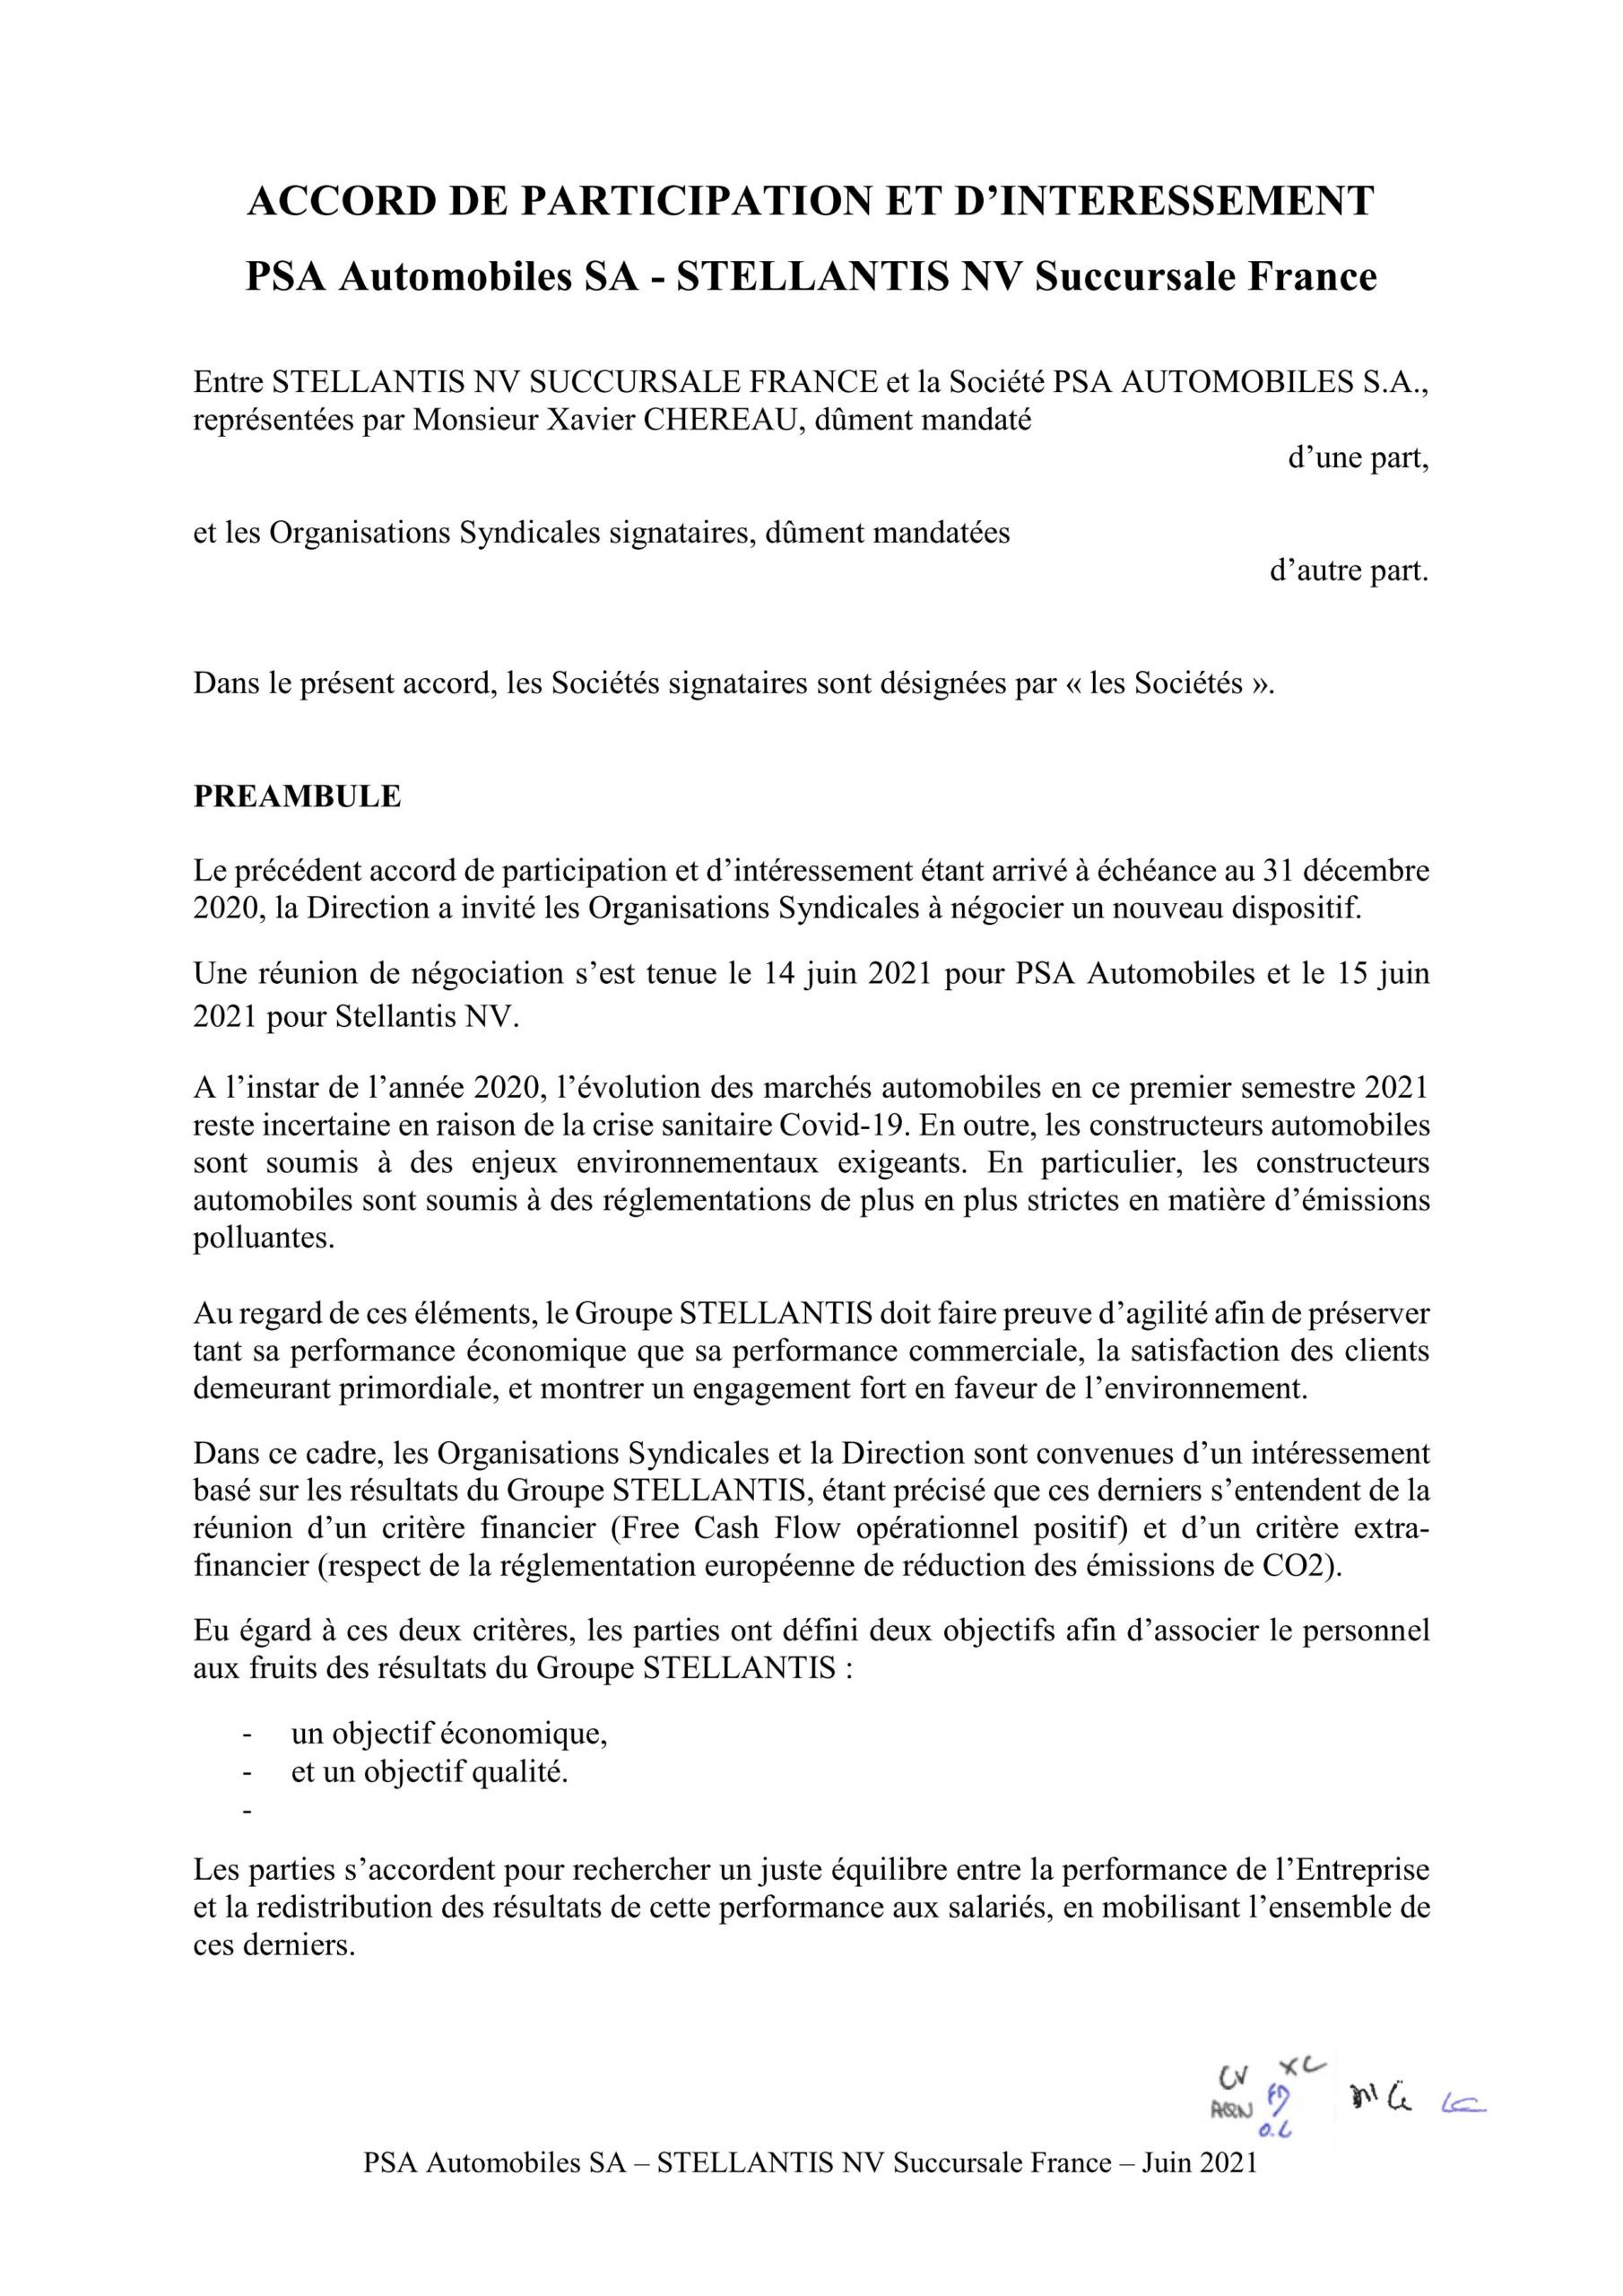 Accord de participation et d'intéressement (PSA Automobiles SA – STELLANTIS  NV Succursale France) – Juin 2021